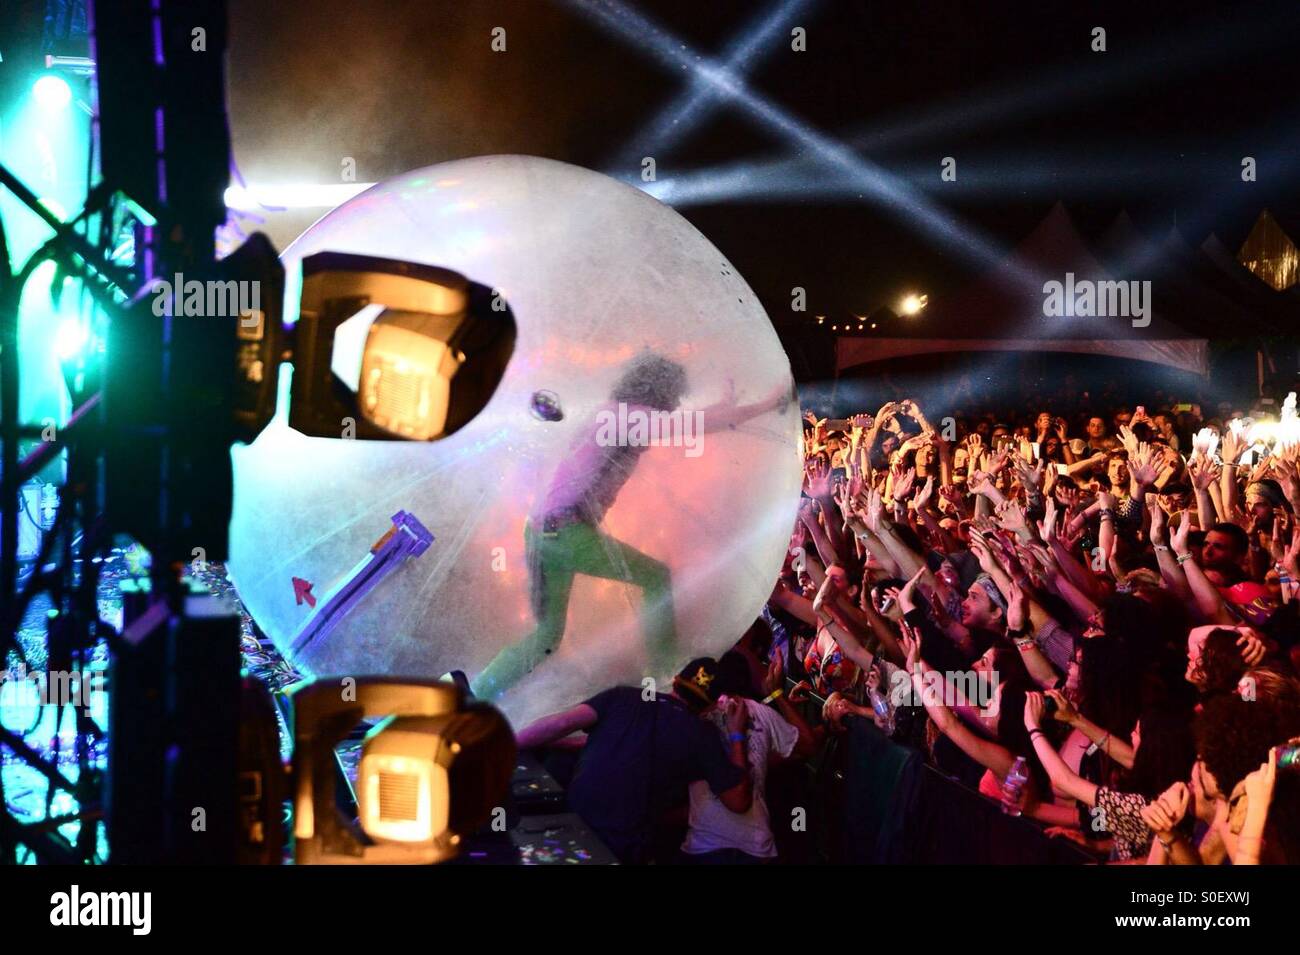 Il Flaming Lips Wayne Coyne testa fuori in mezzo alla folla nella sua firma 'hamster ball' durante la levitazione Austin 2015 Music Festival di Austin in Texas, Stati Uniti d'America. Foto Stock